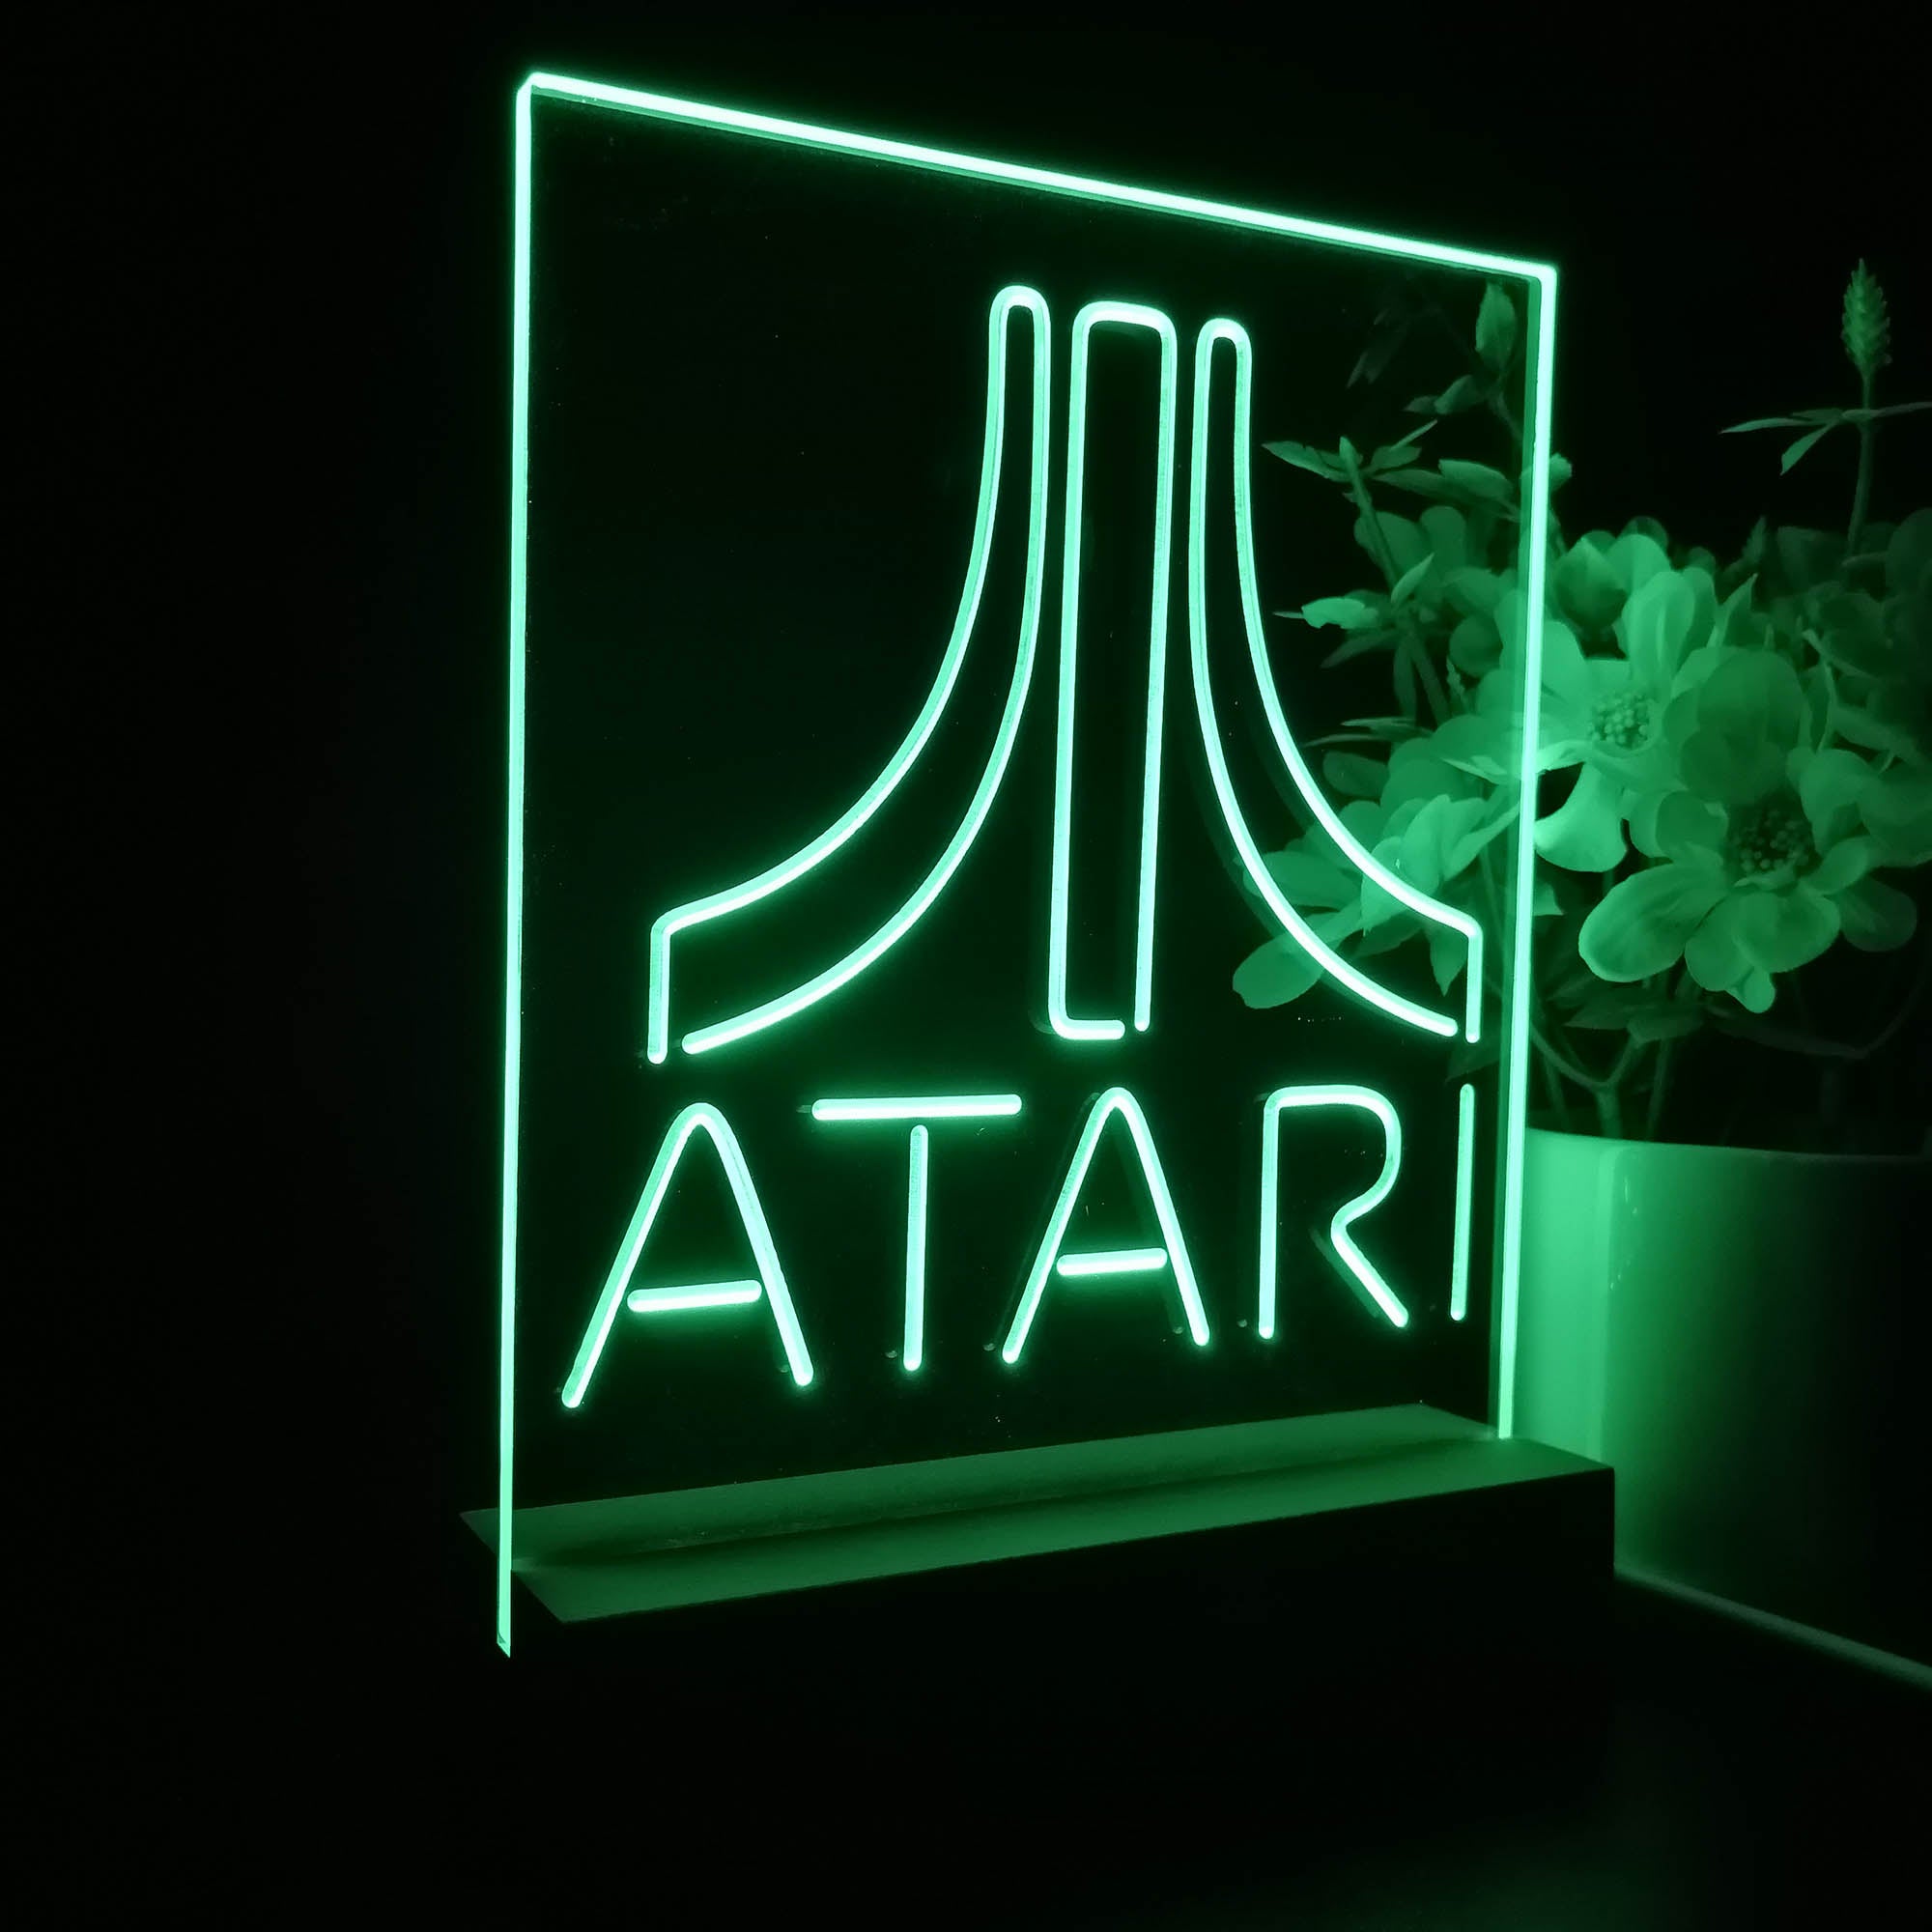 Atari 3D LED Optical Illusion Sleep Night Light Table Lamp